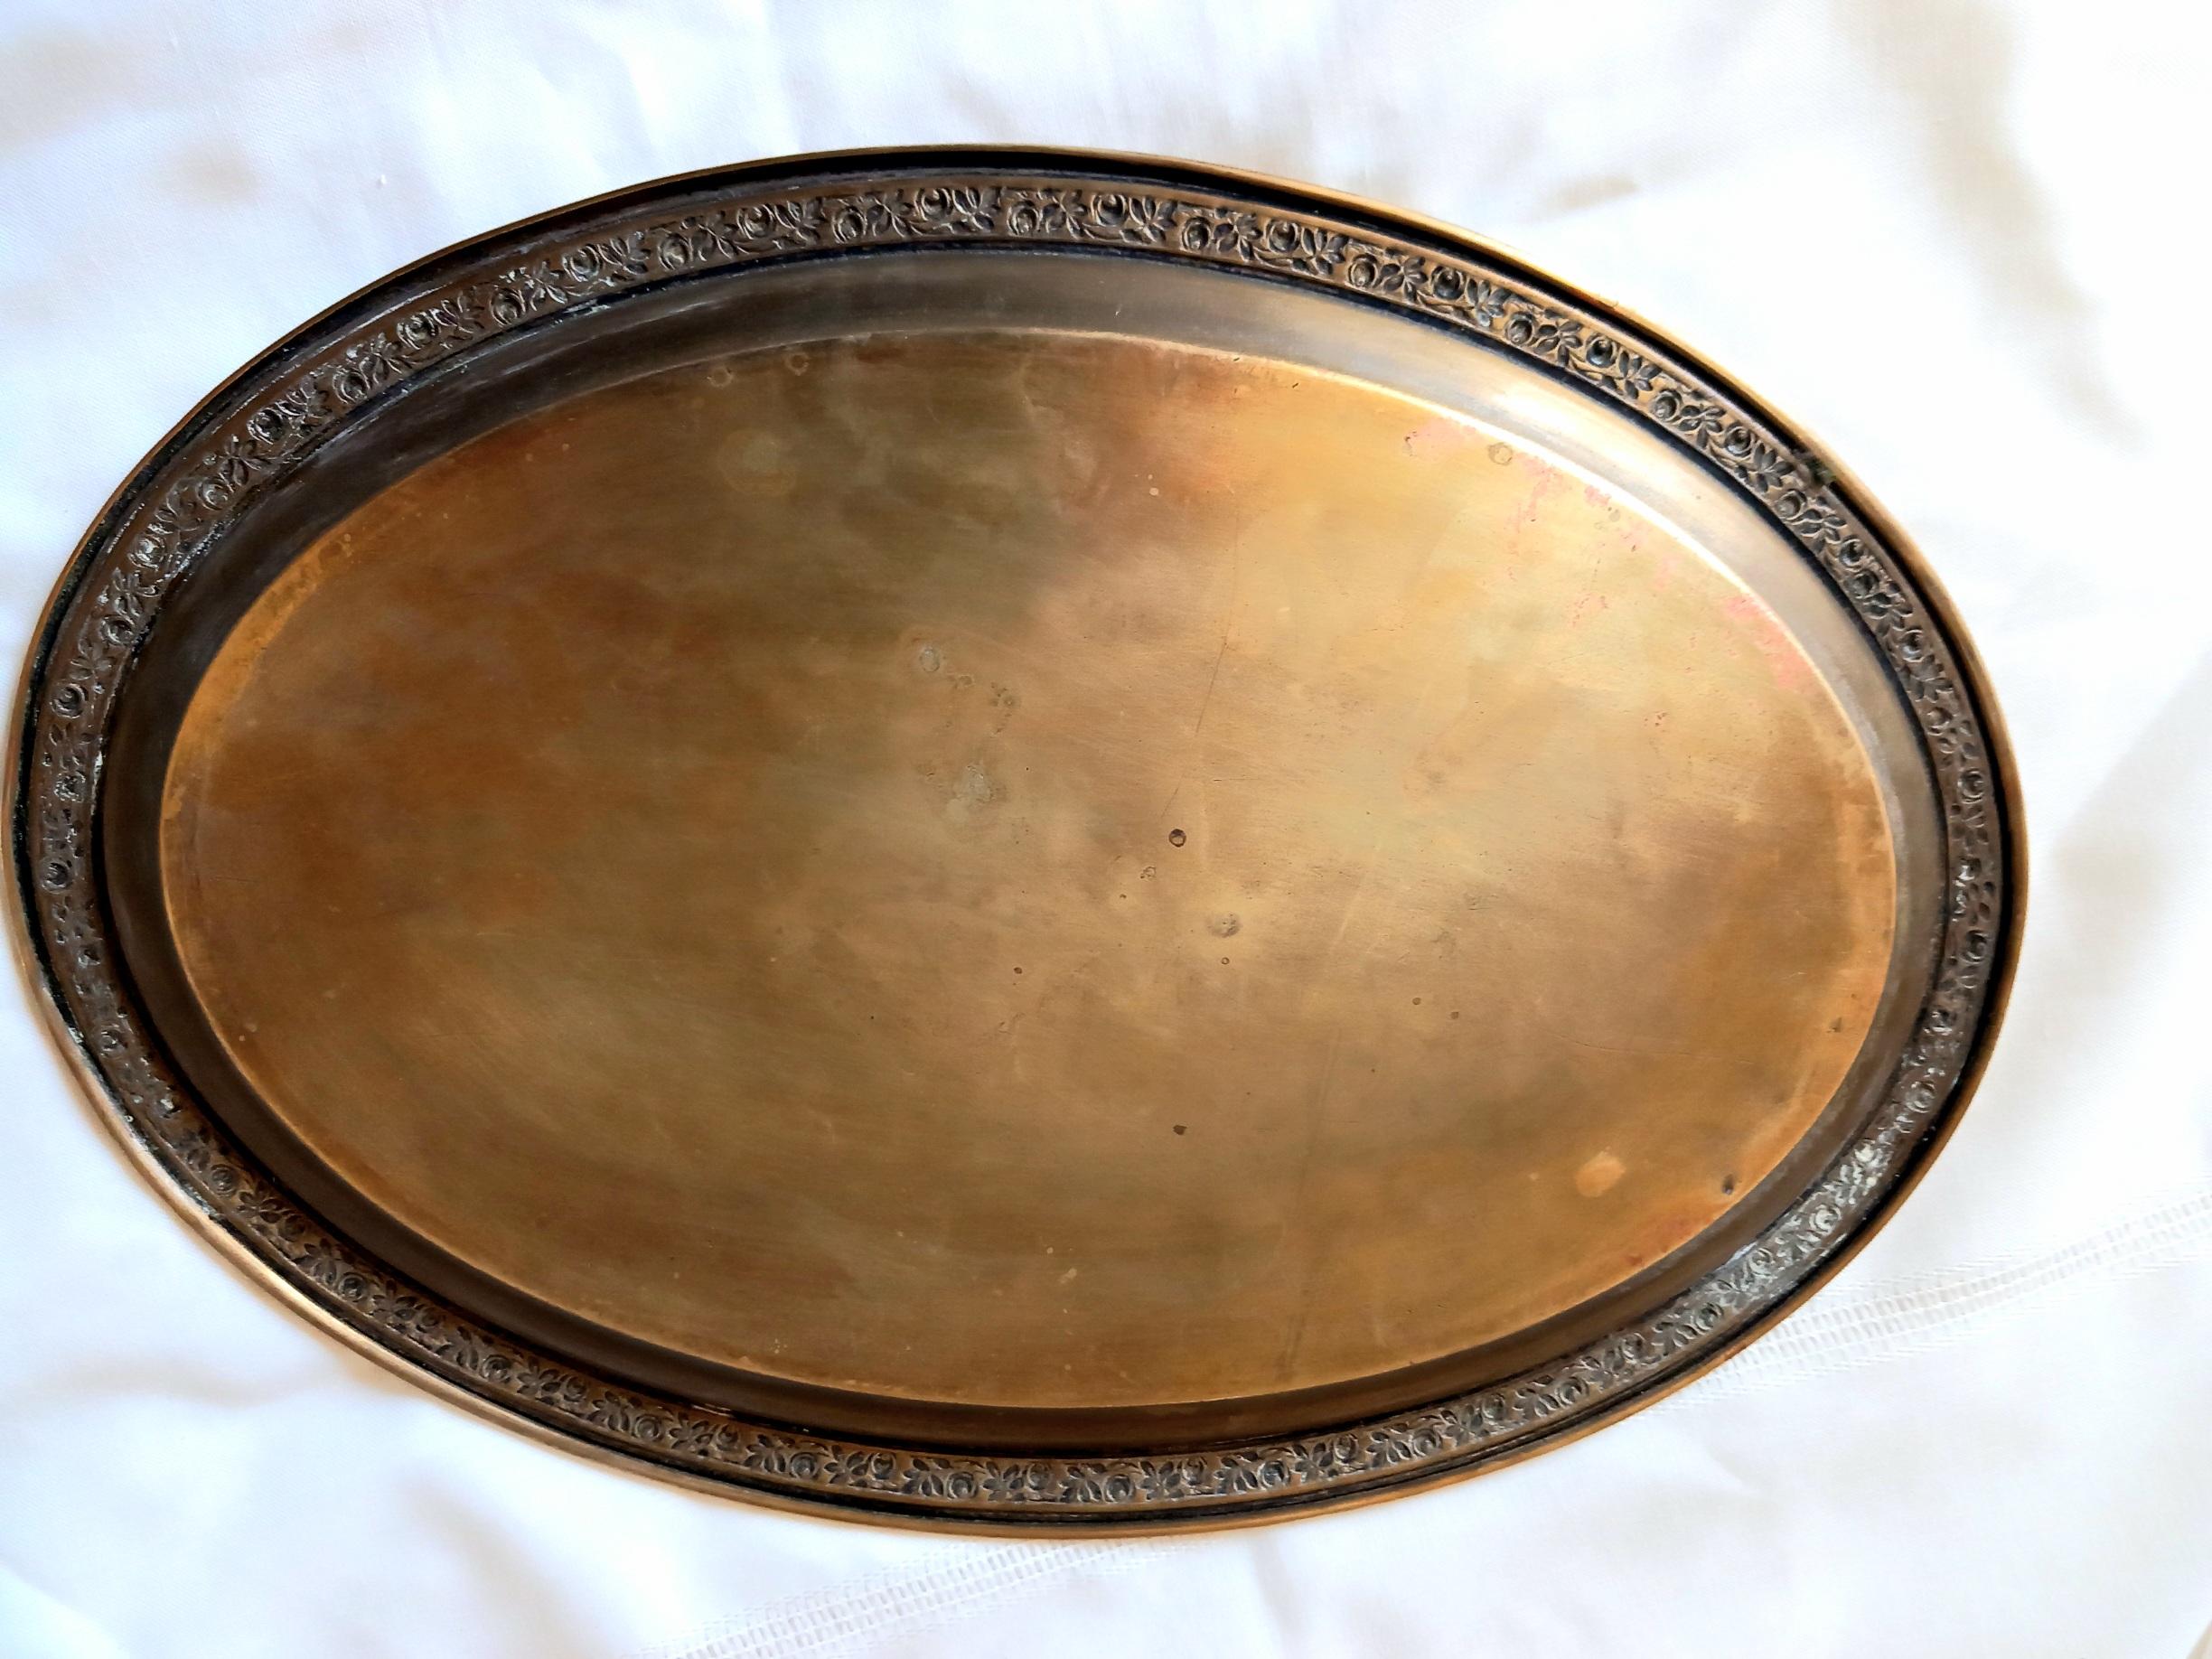 Ovales Tablett mit verzierter seitlicher Feston
 Dieses Tablett ist aus Bronze und
Es ist immer noch ein Tablett vom Ende des 19. Jahrhunderts.
Sein Zustand ist sehr gut, er hat das typische Aussehen der vergangenen Jahre, aber keine Dellen oder